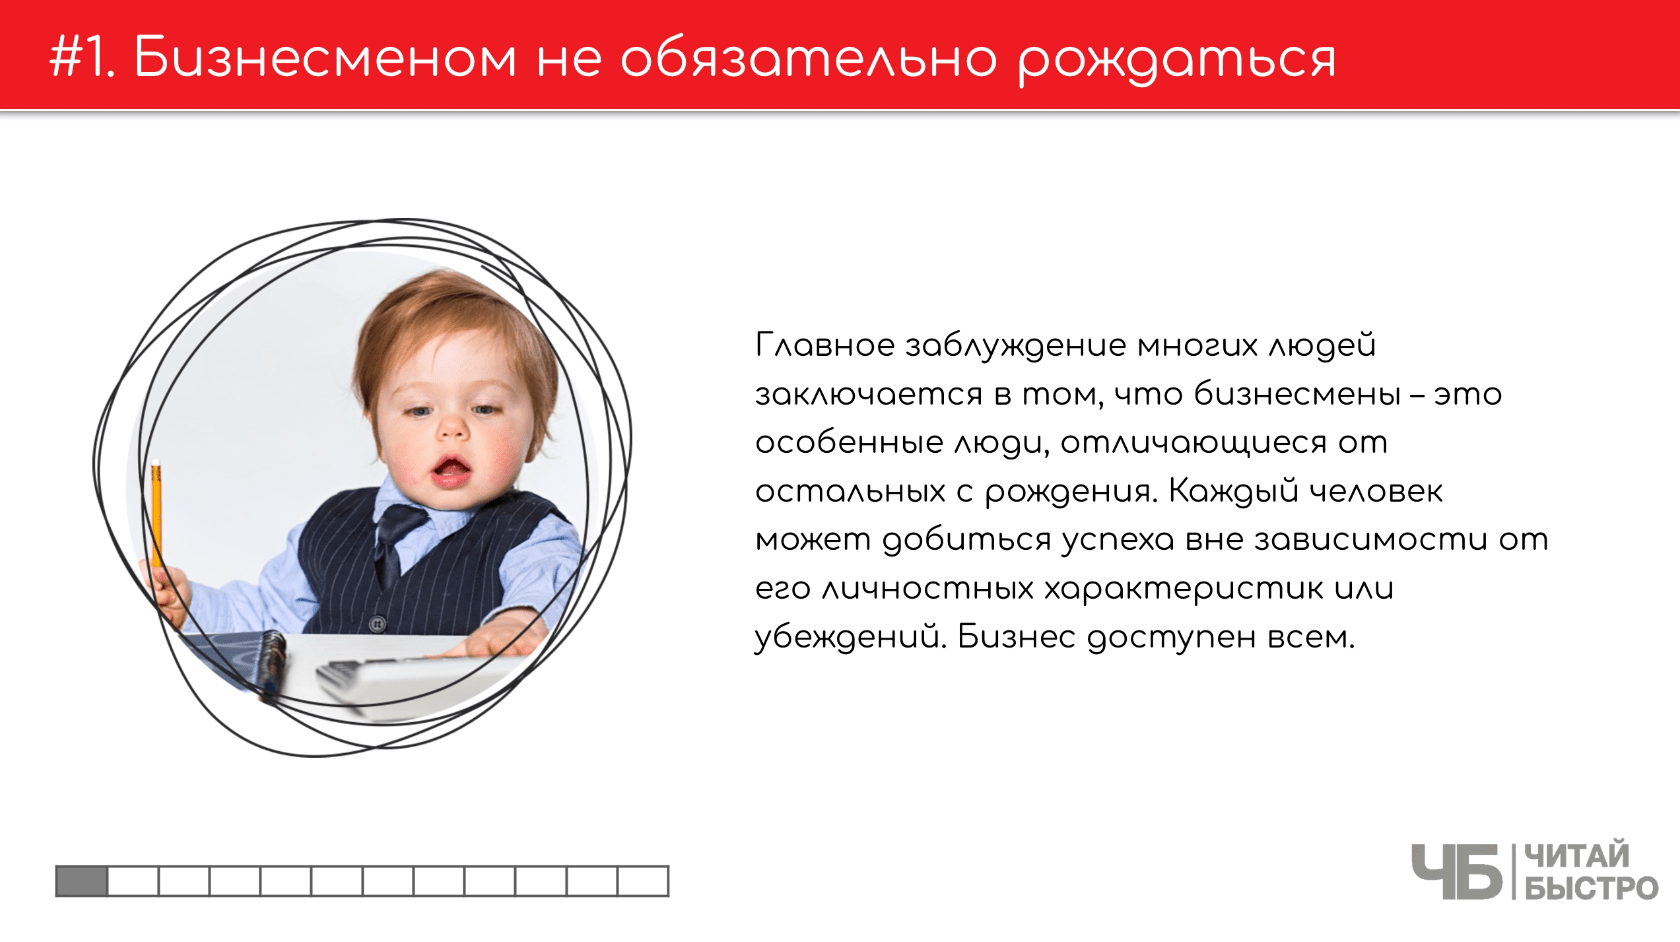 На этом слайде изображен тезис о том, что бизнесменом не обязательно рождаться и иллюстрация ребенка в деловом костюме.